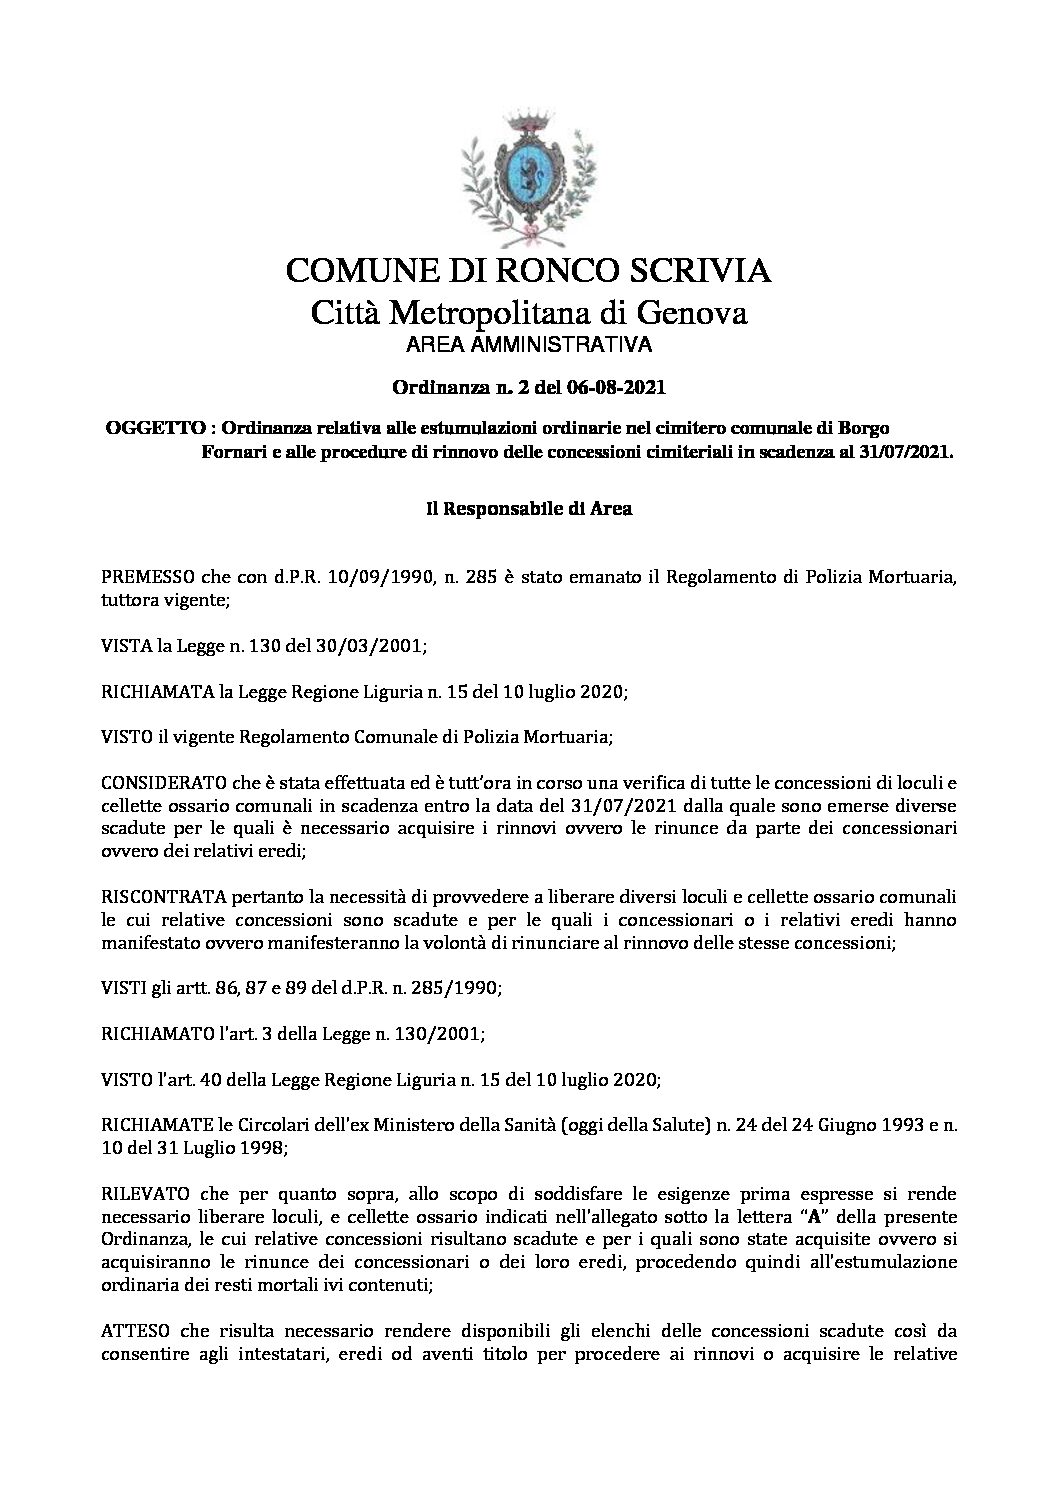 Ordinanza relativa alle estumulazioni ordinarie nel cimitero comunale di Borgo Fornari e alle procedure di rinnovo delle concessioni cimiteriali in scadenza al 31/07/2021.